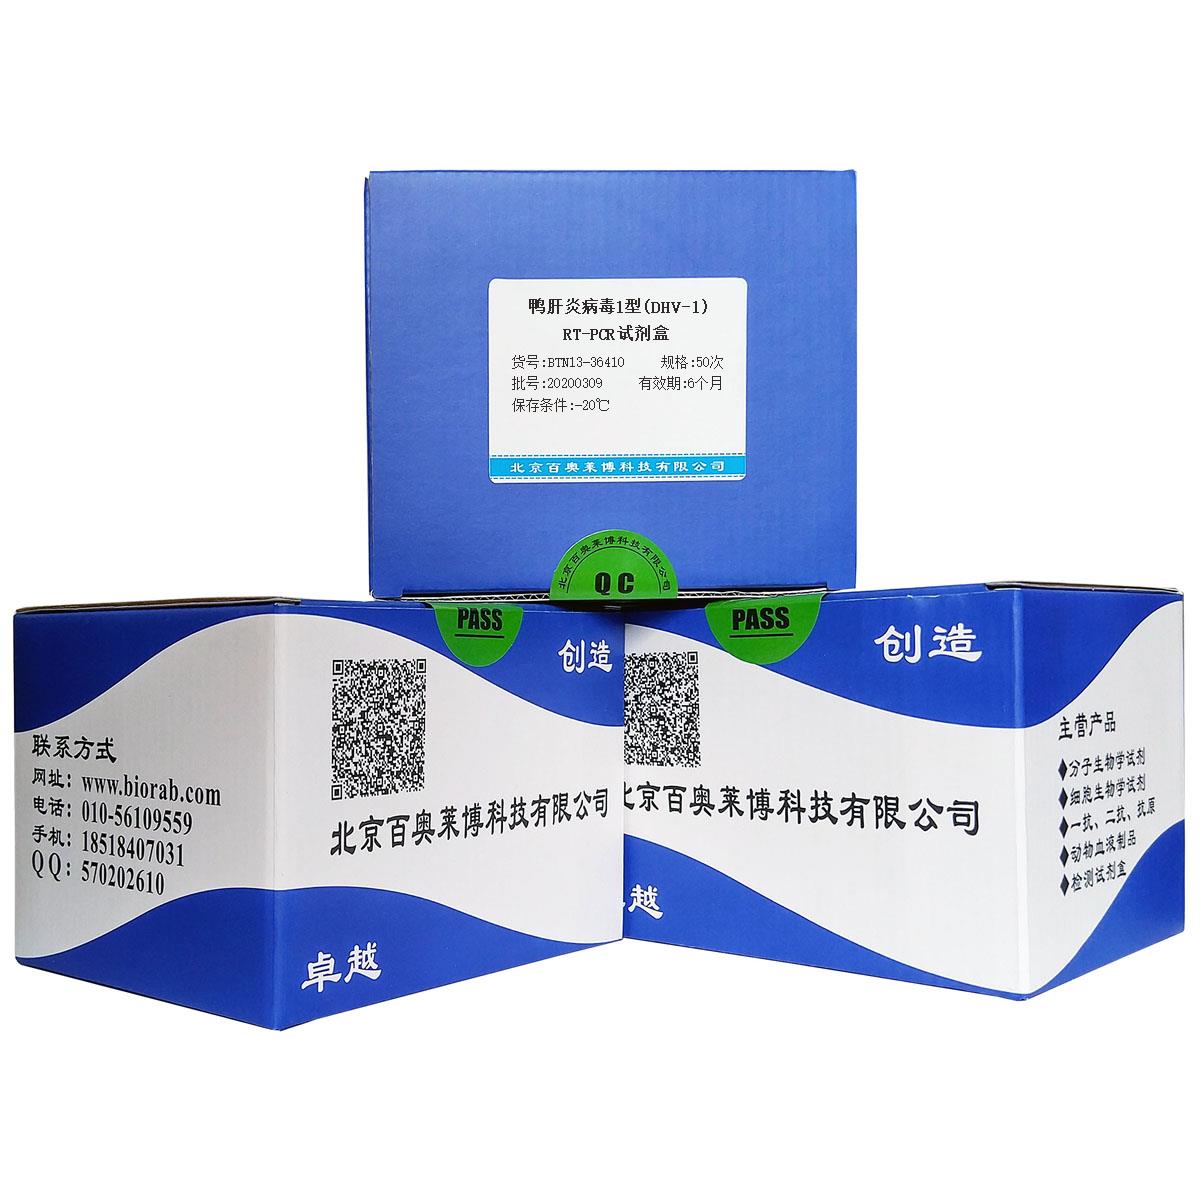 鸭肝炎病毒1型(DHV-1)RT-PCR试剂盒